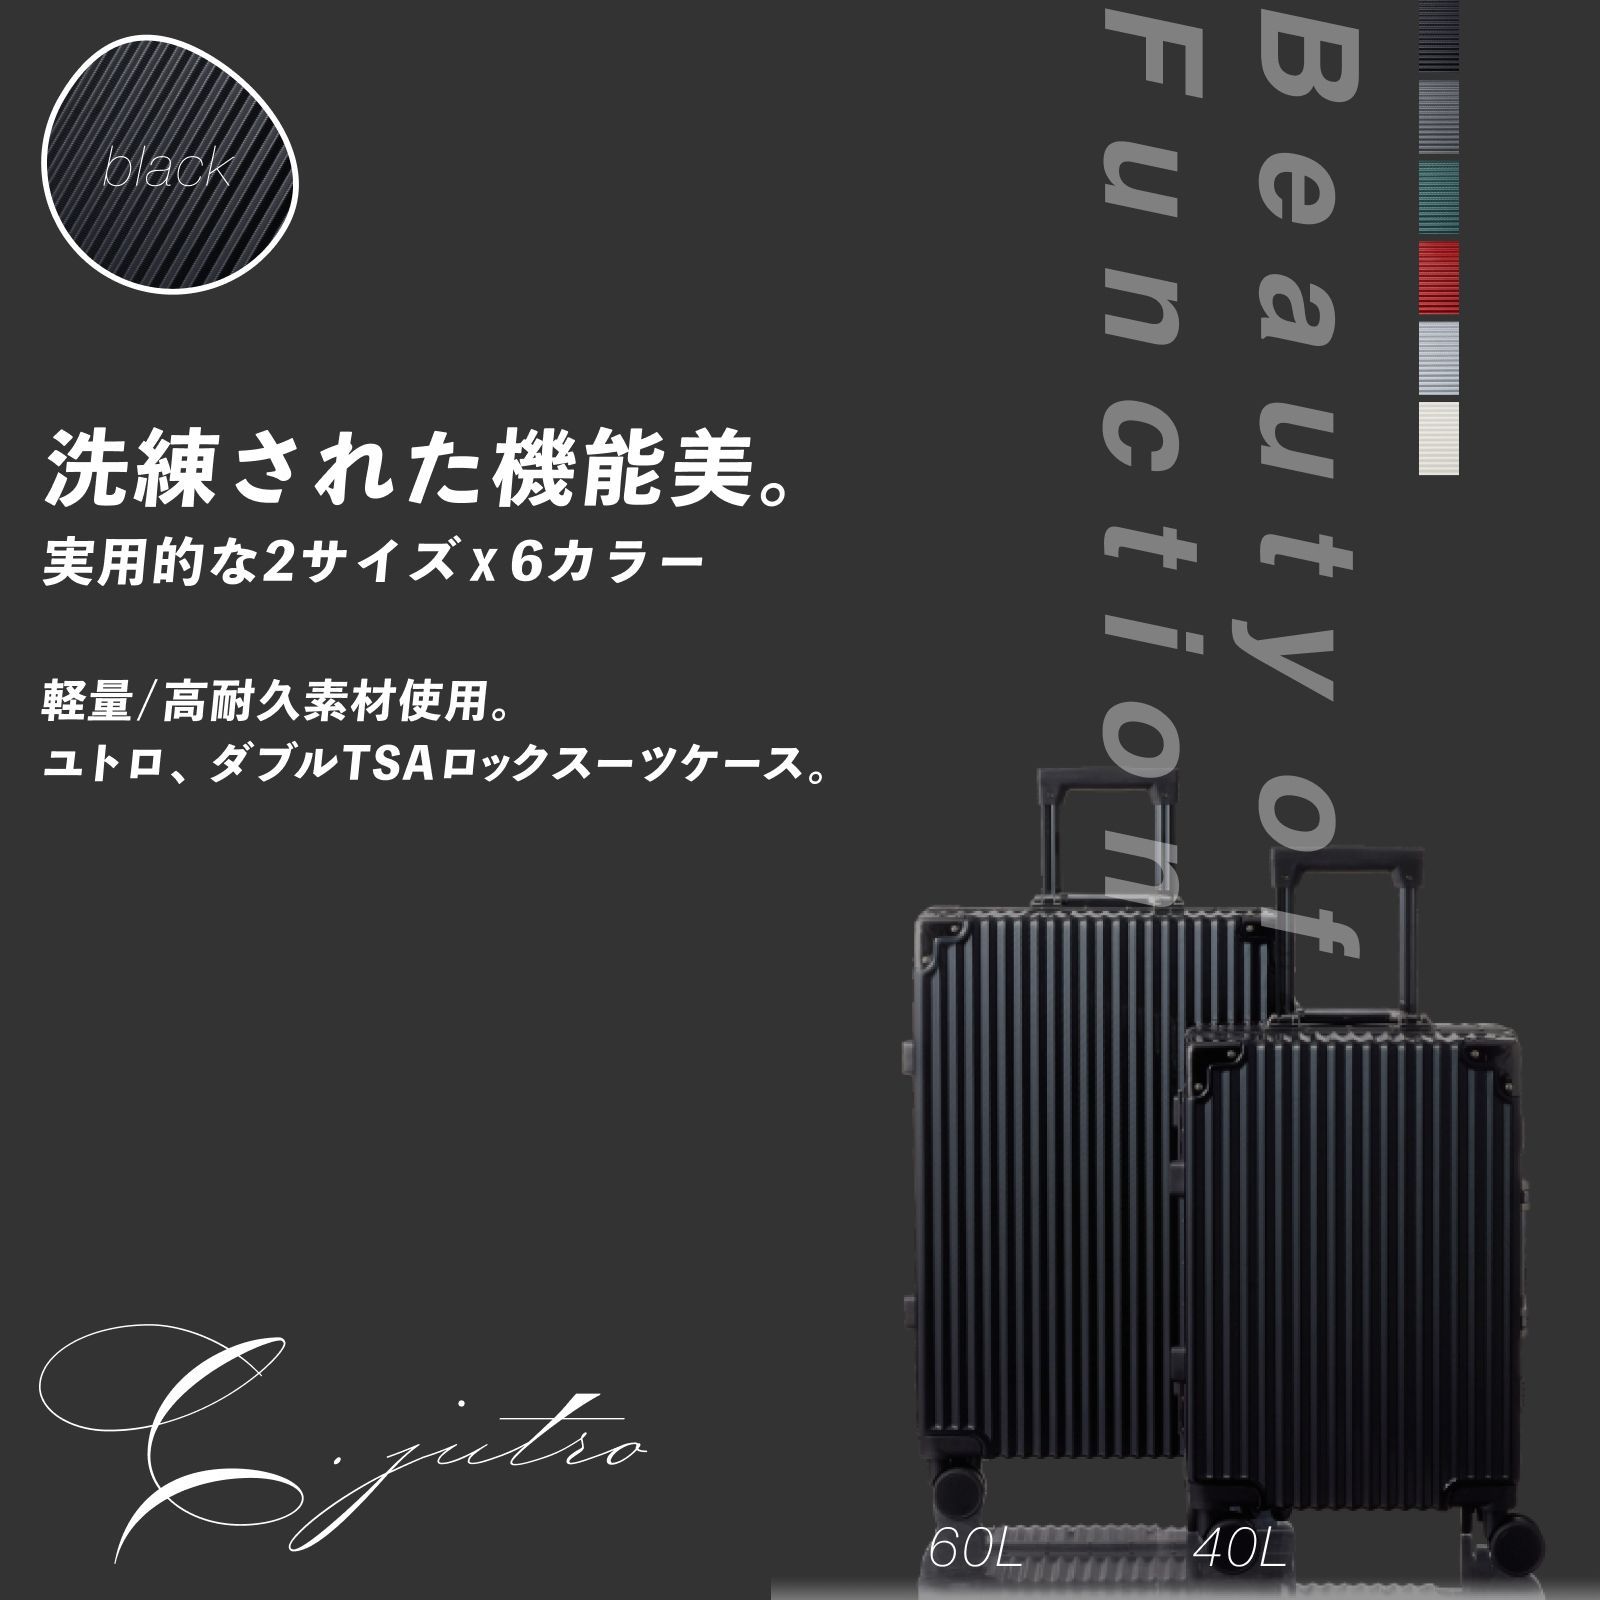 キャリーケース スーツケース Sサイズ 機内持ち込み Mサイズ 大容量 ブラック 黒